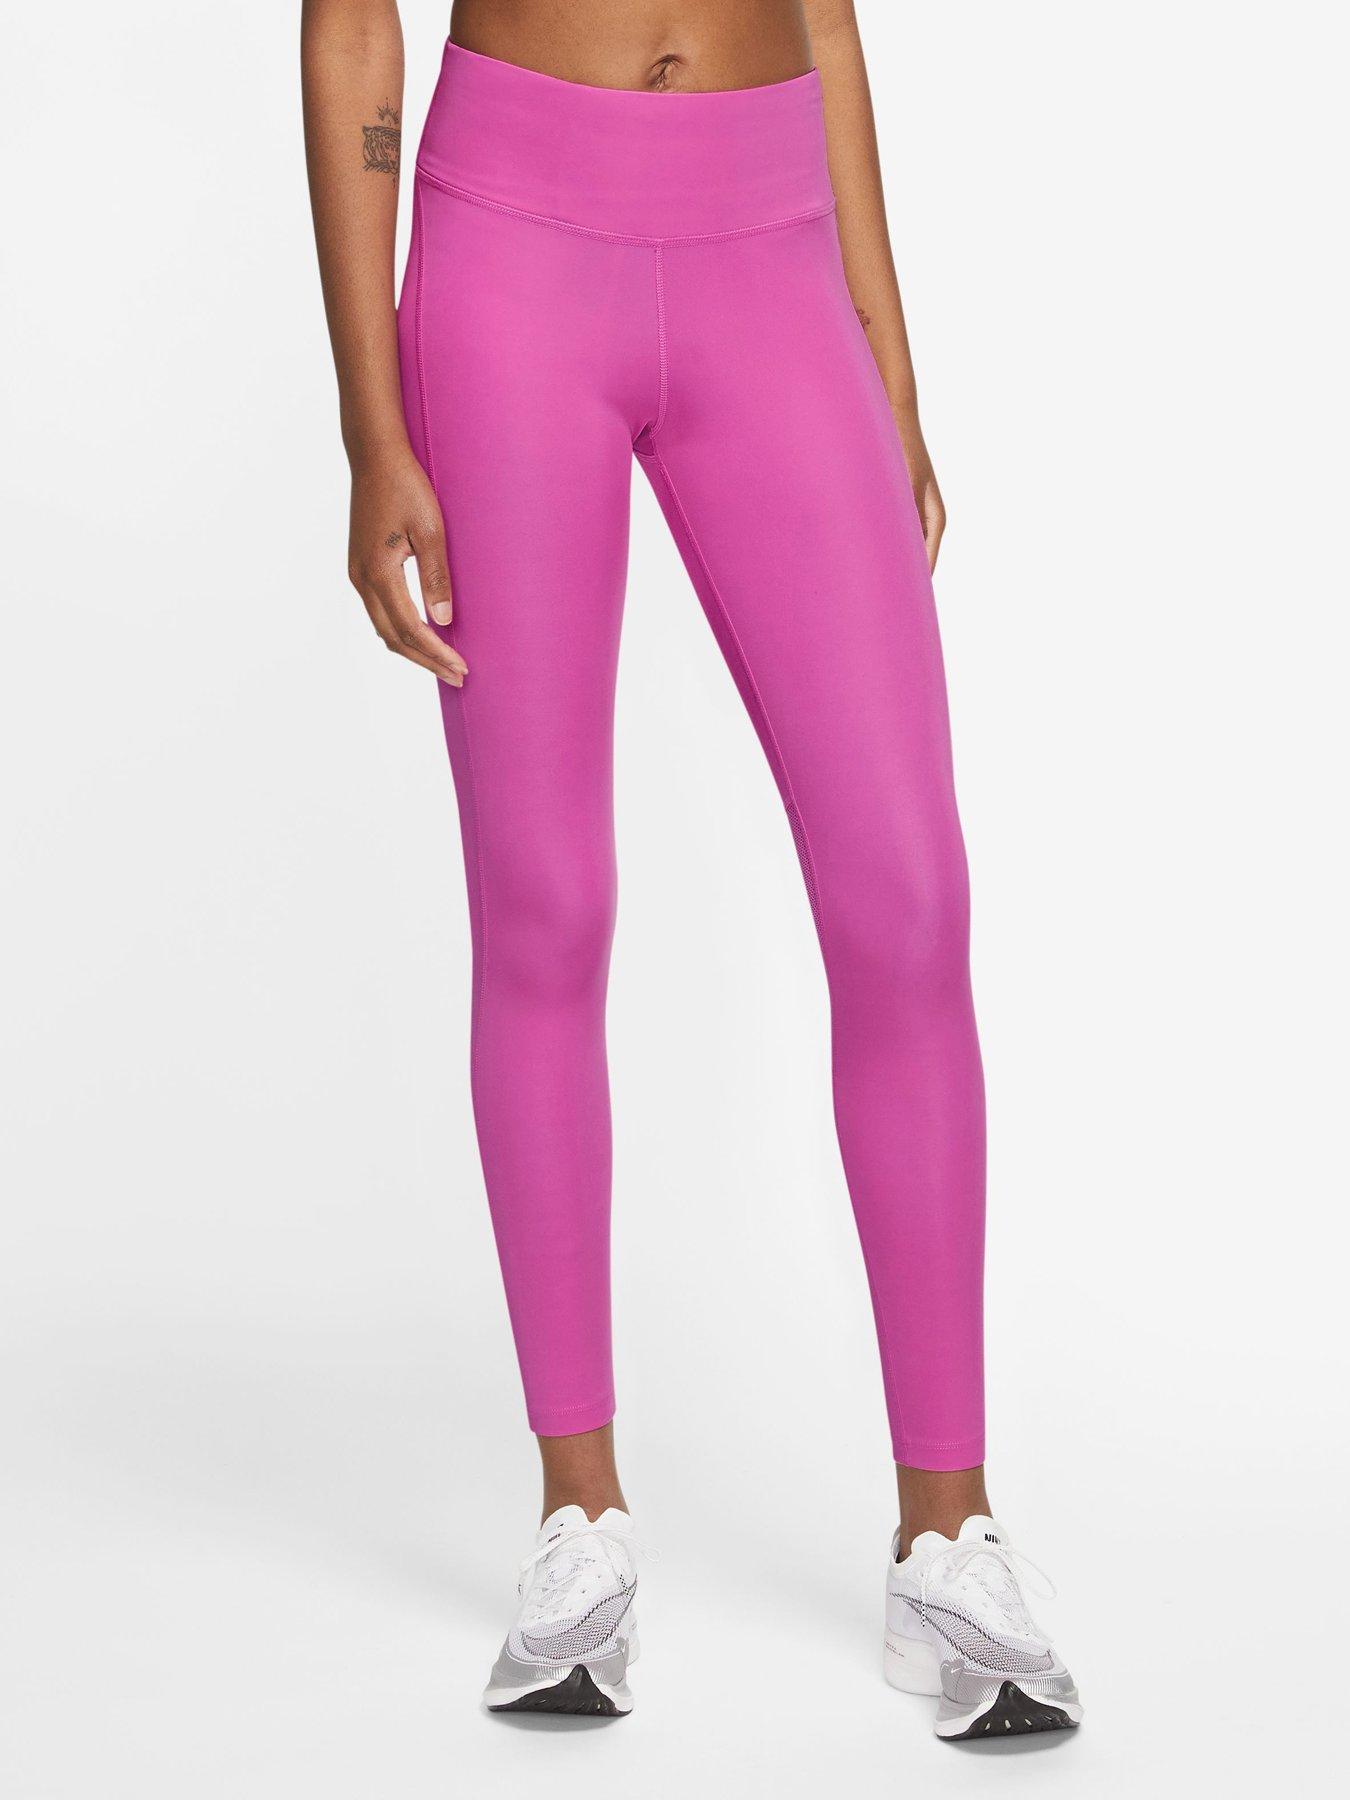 Nike Running Epic Fast Leggings - Pink, Pink, Size Xs, Women